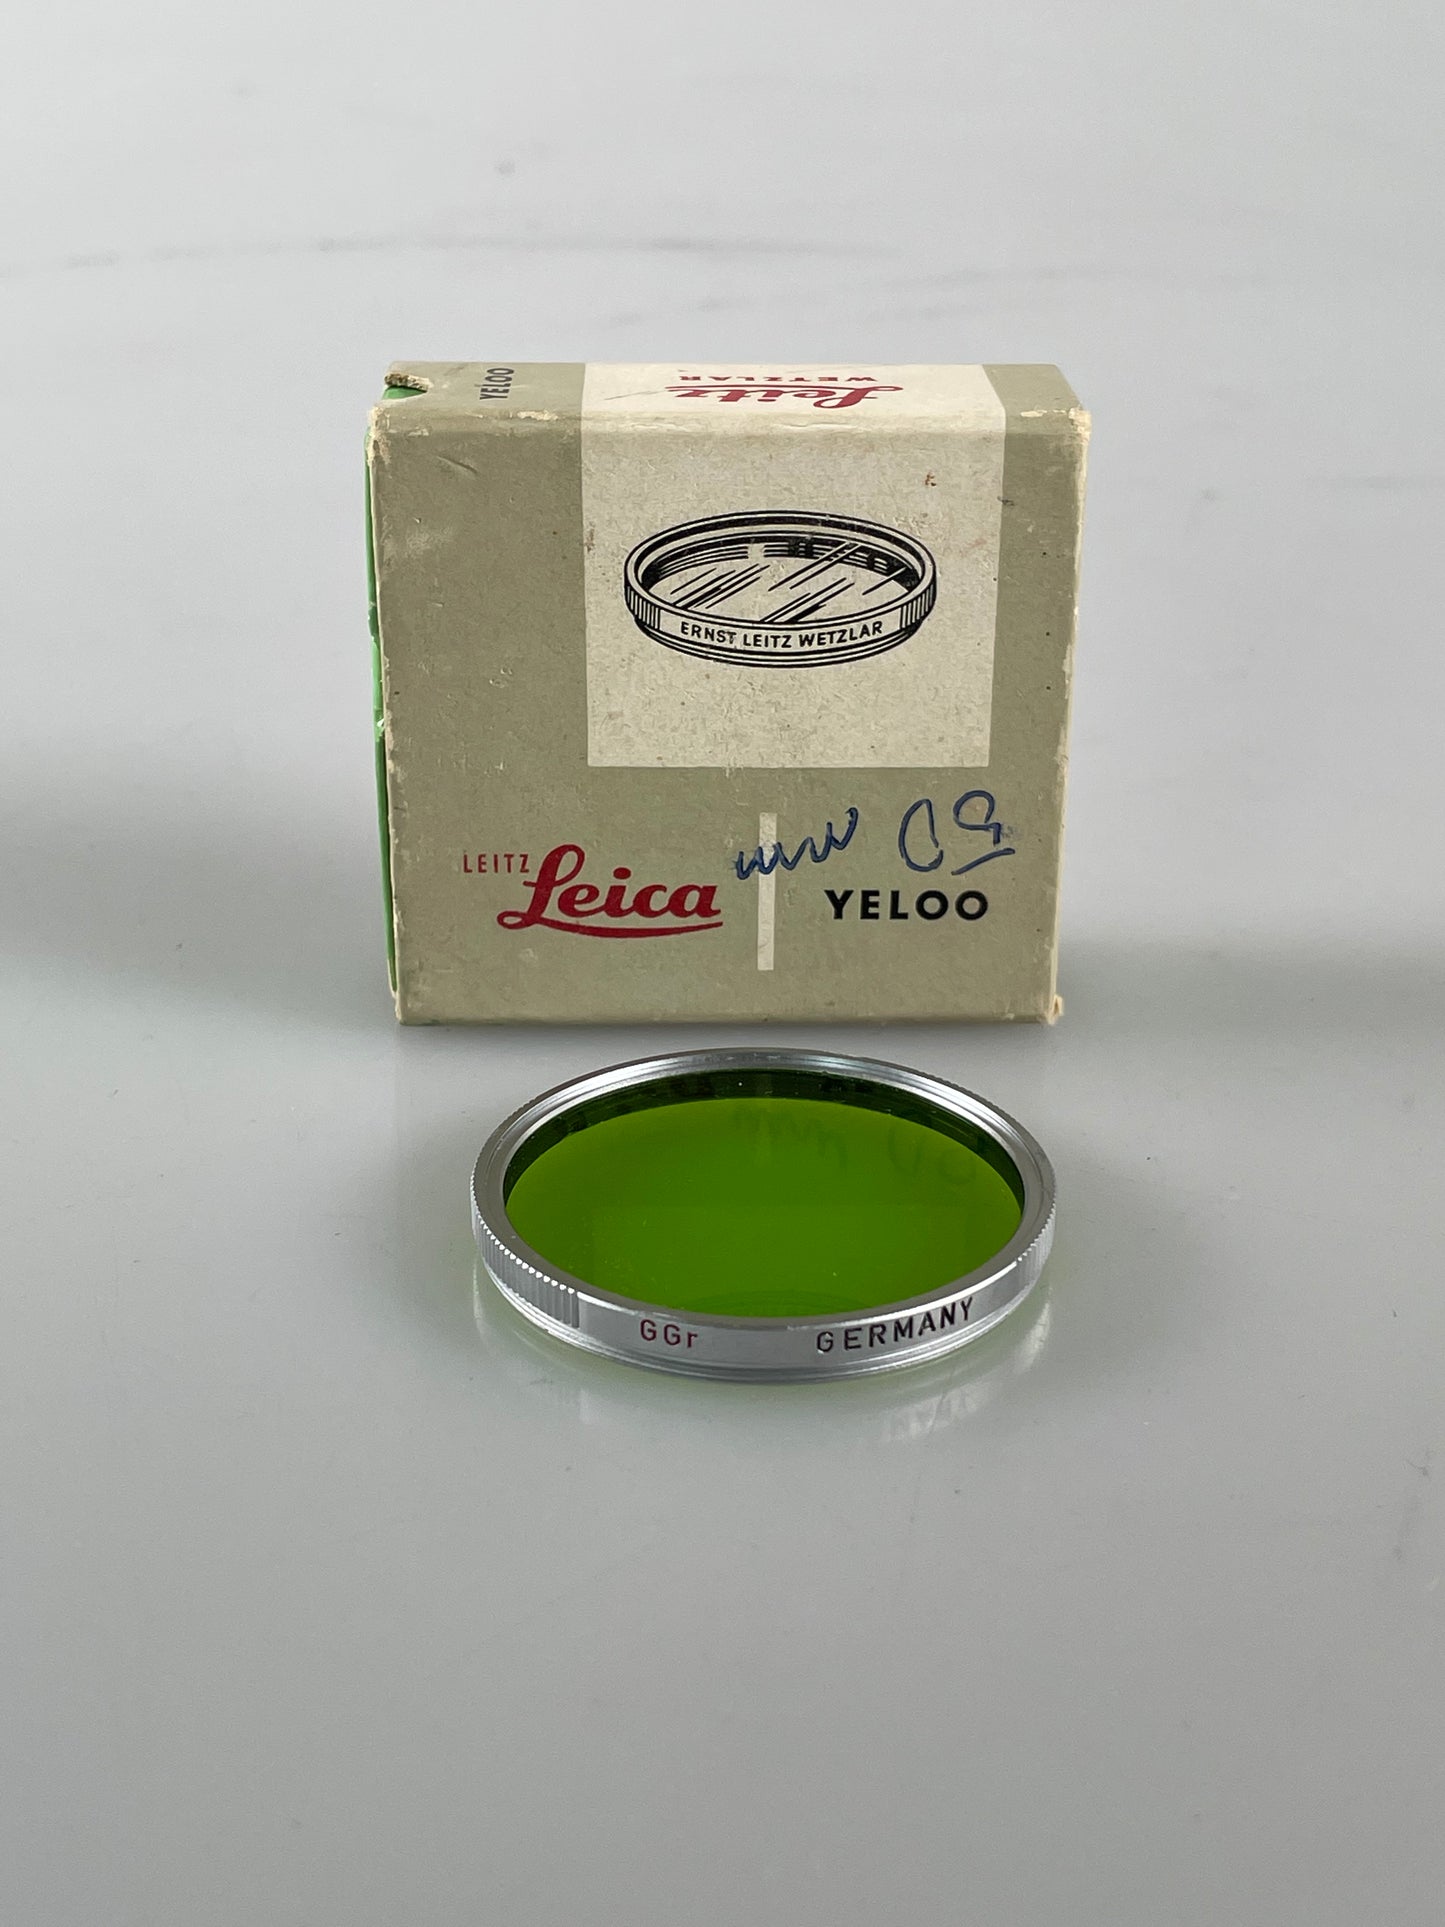 Leica E43 43mm GGr Green Filter summilux